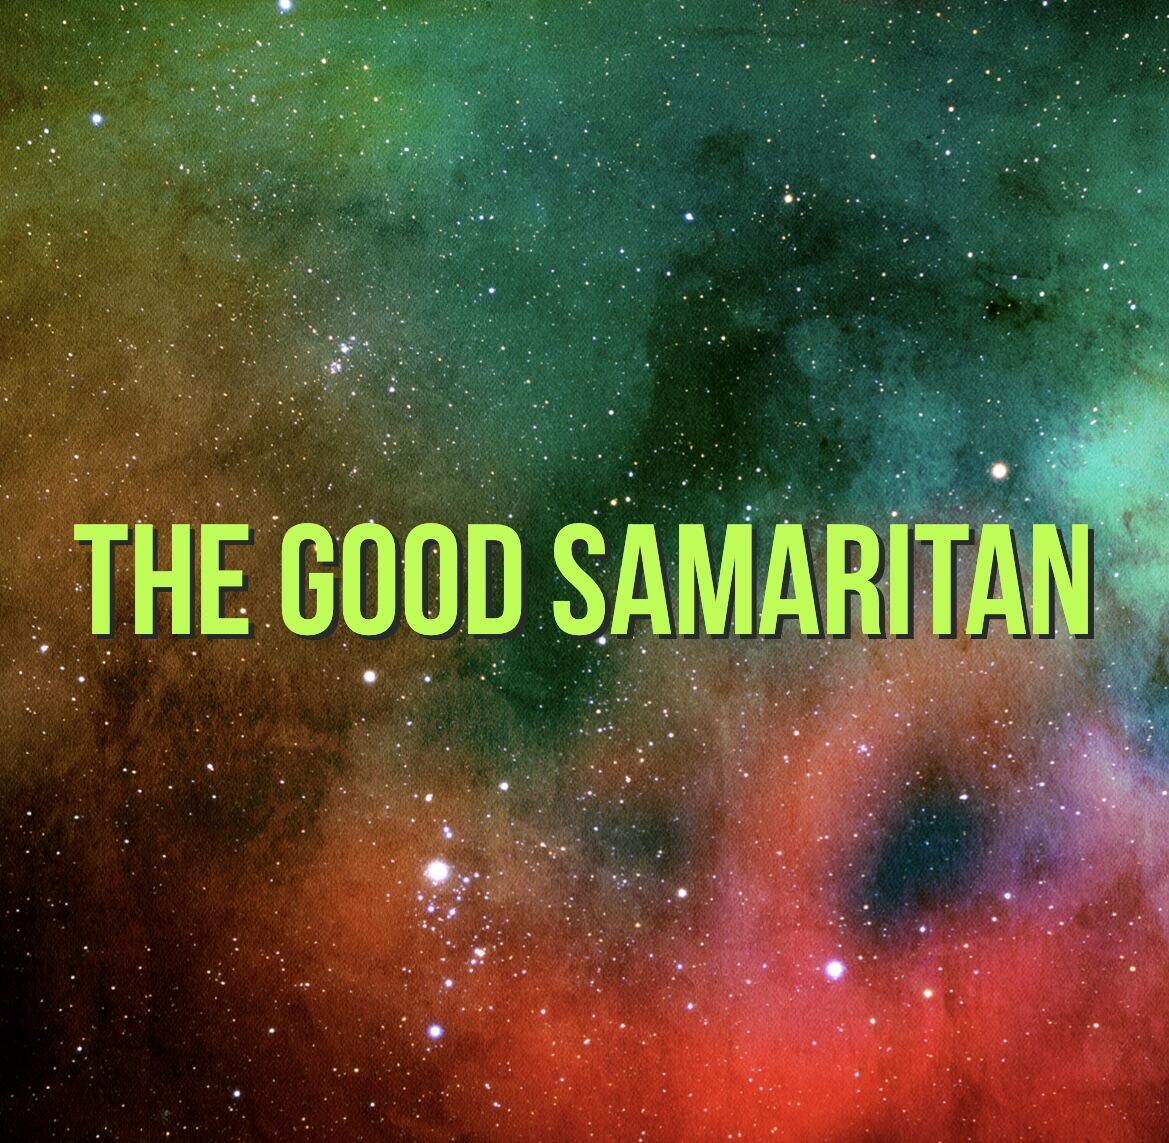 THE GOOD SAMARITAN